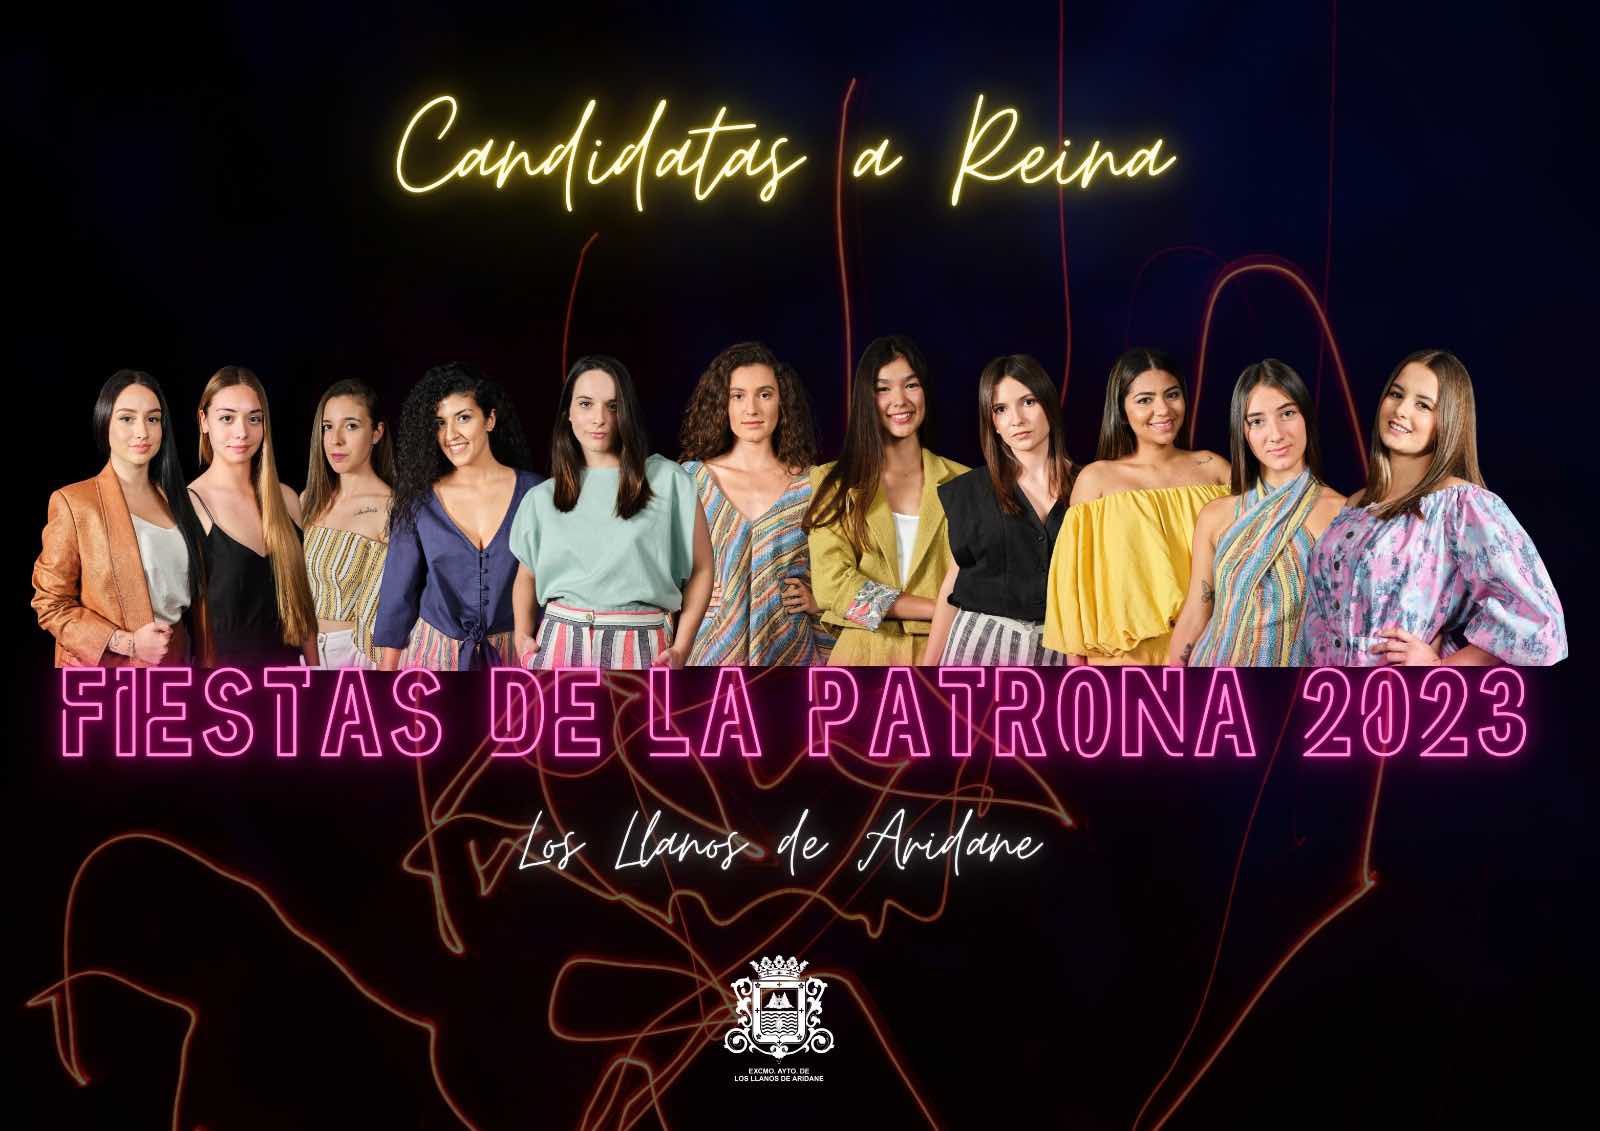 Once candidatas se disputarán el título de Reina de La Patrona 2023